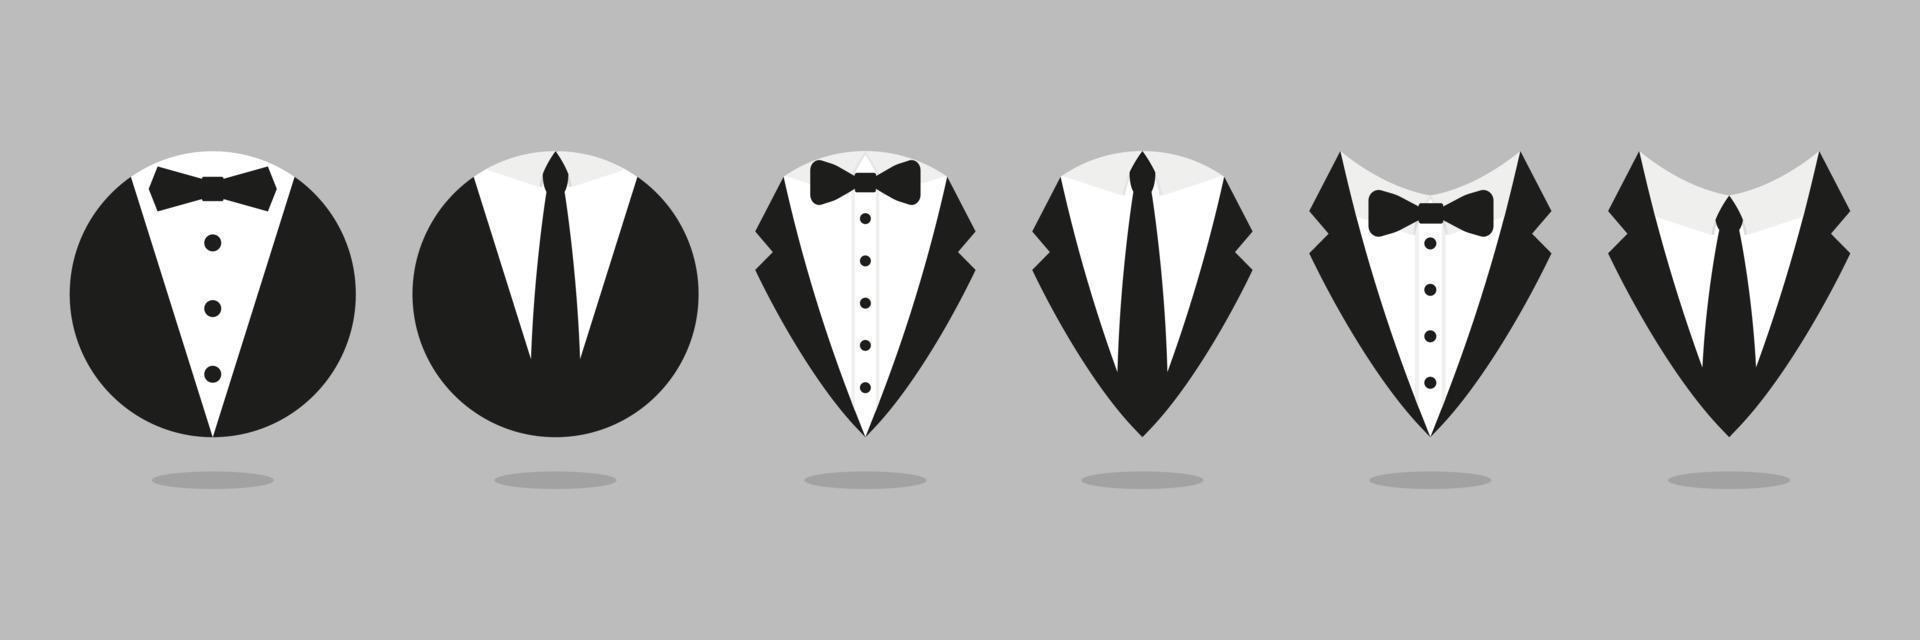 icônes de collection de majordome gentleman. symboles d'homme d'affaires de vecteur